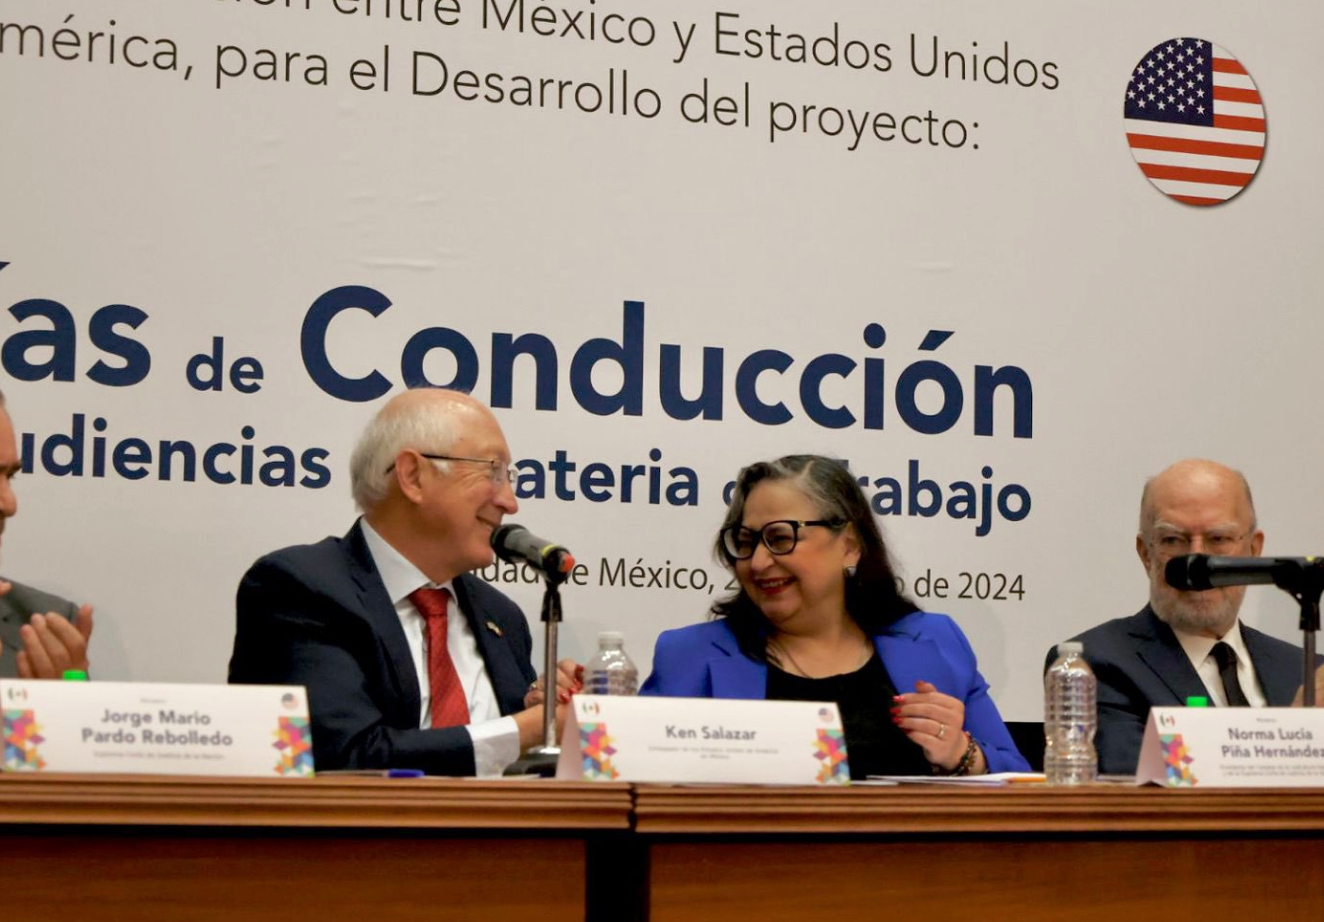 La SCJN es una de las instituciones más importantes para la democracia de México: Ken Salazar